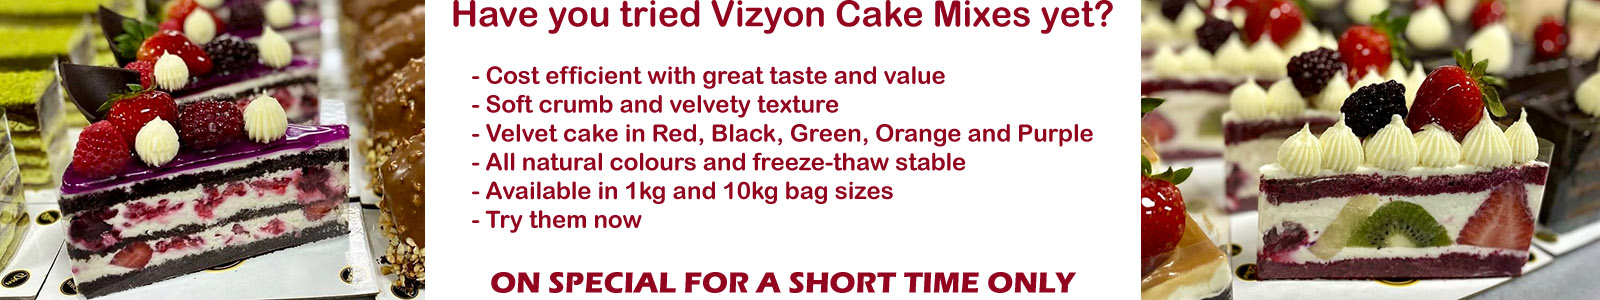 Vizyon Cake Mixes